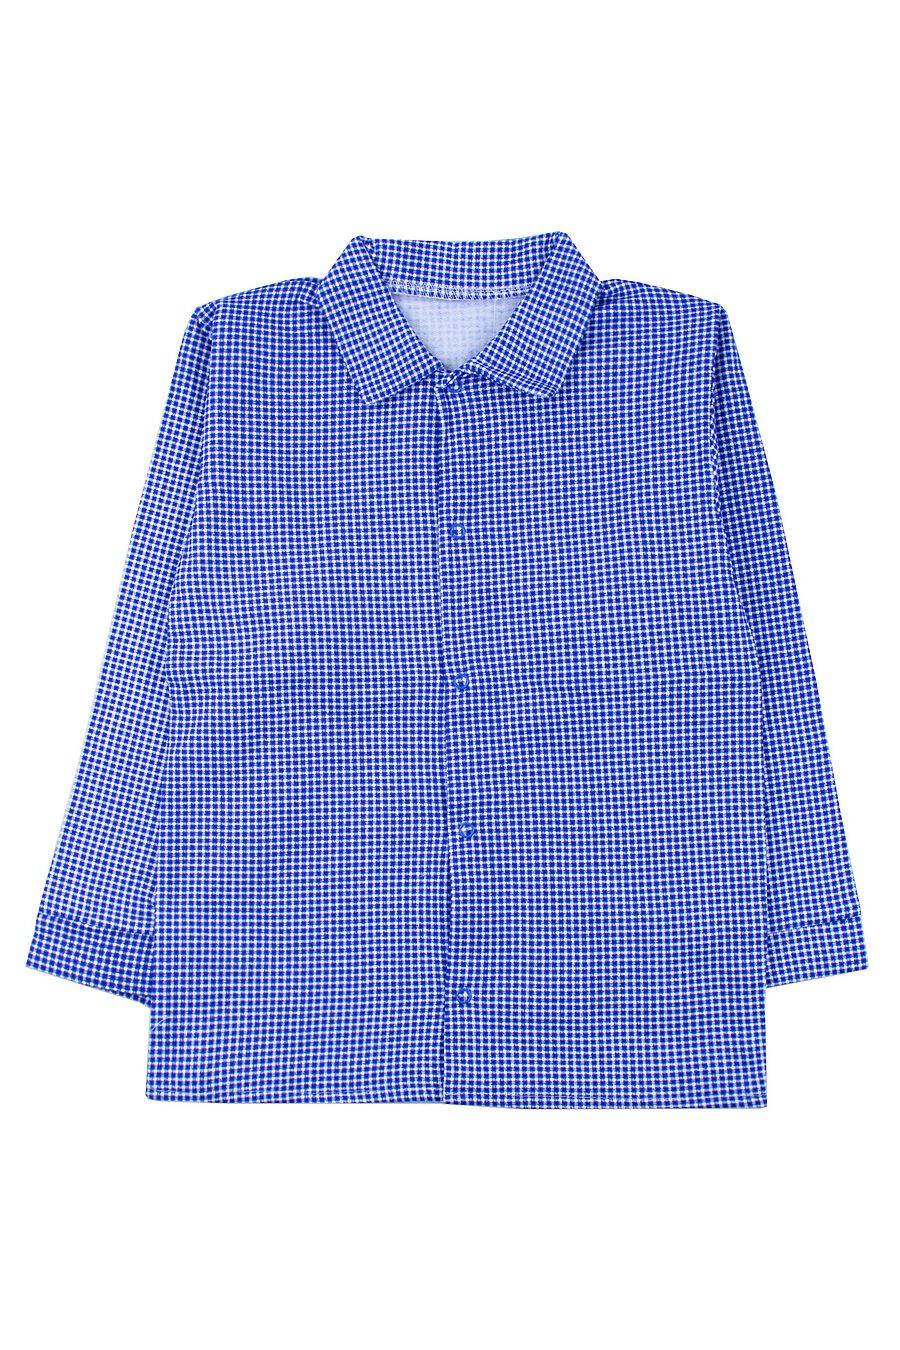 Рубашка YOULALA (742398), купить в Moyo.moda